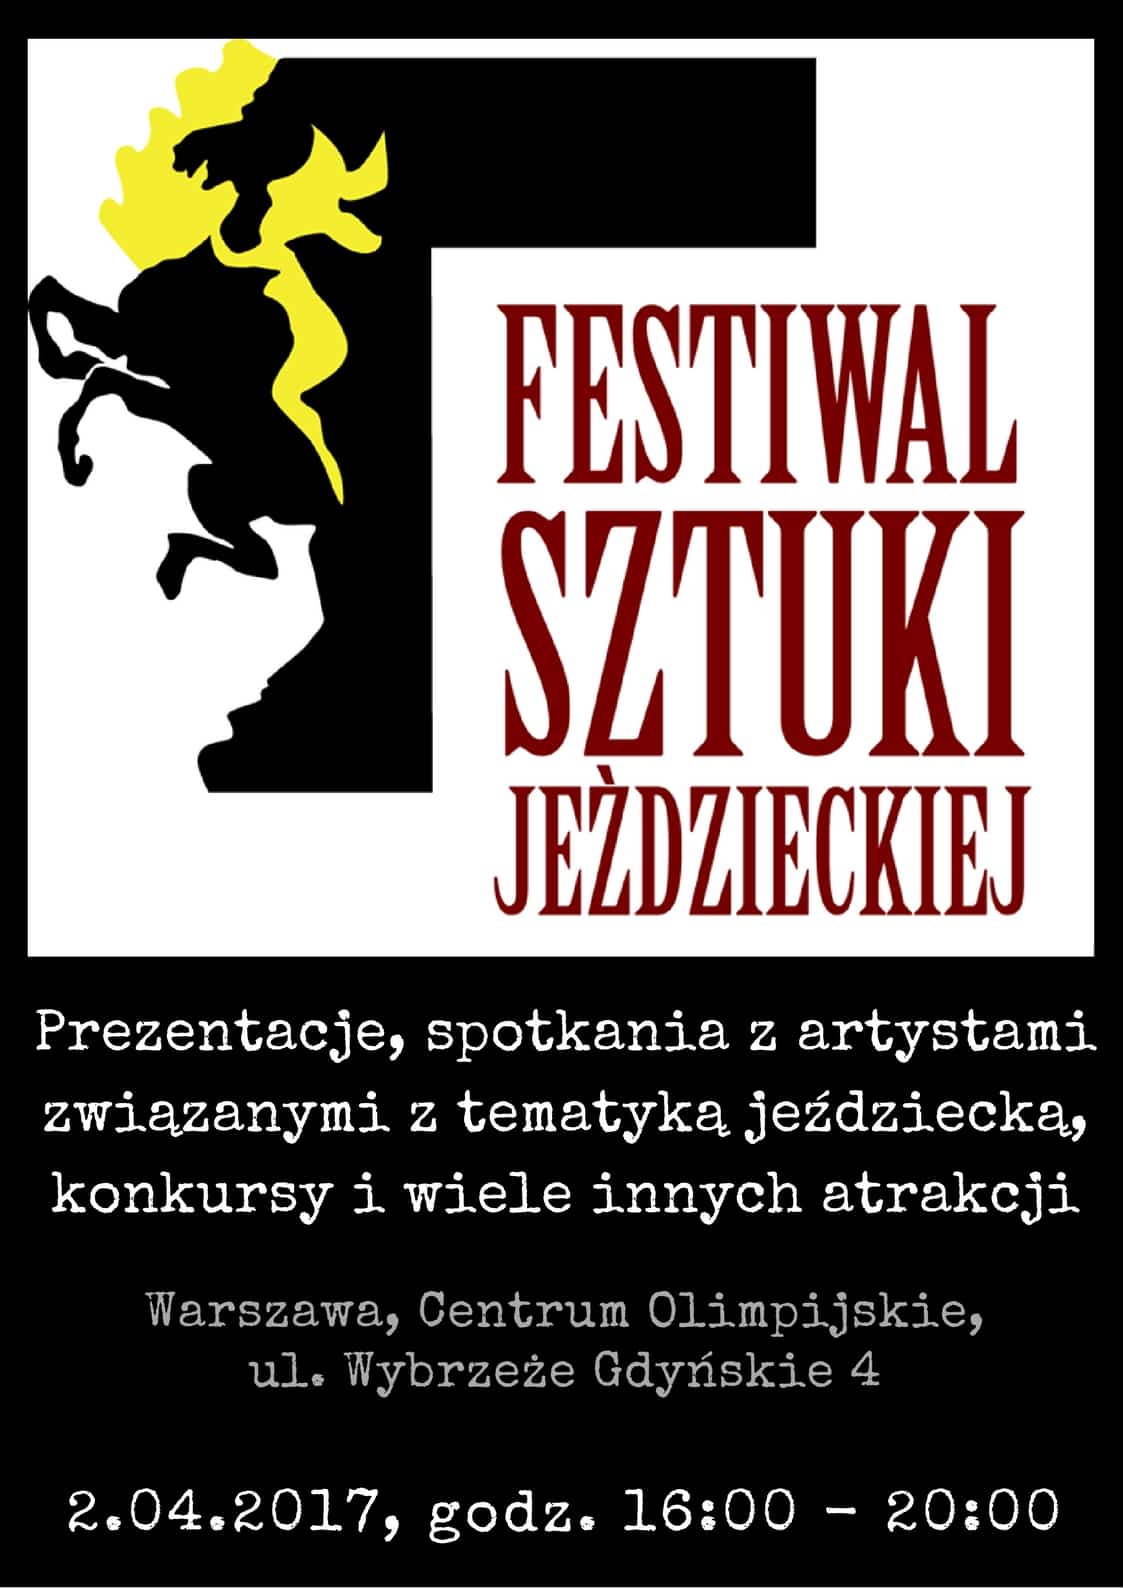 Featured image for “Festiwal Sztuki Jeździeckiej 2017”